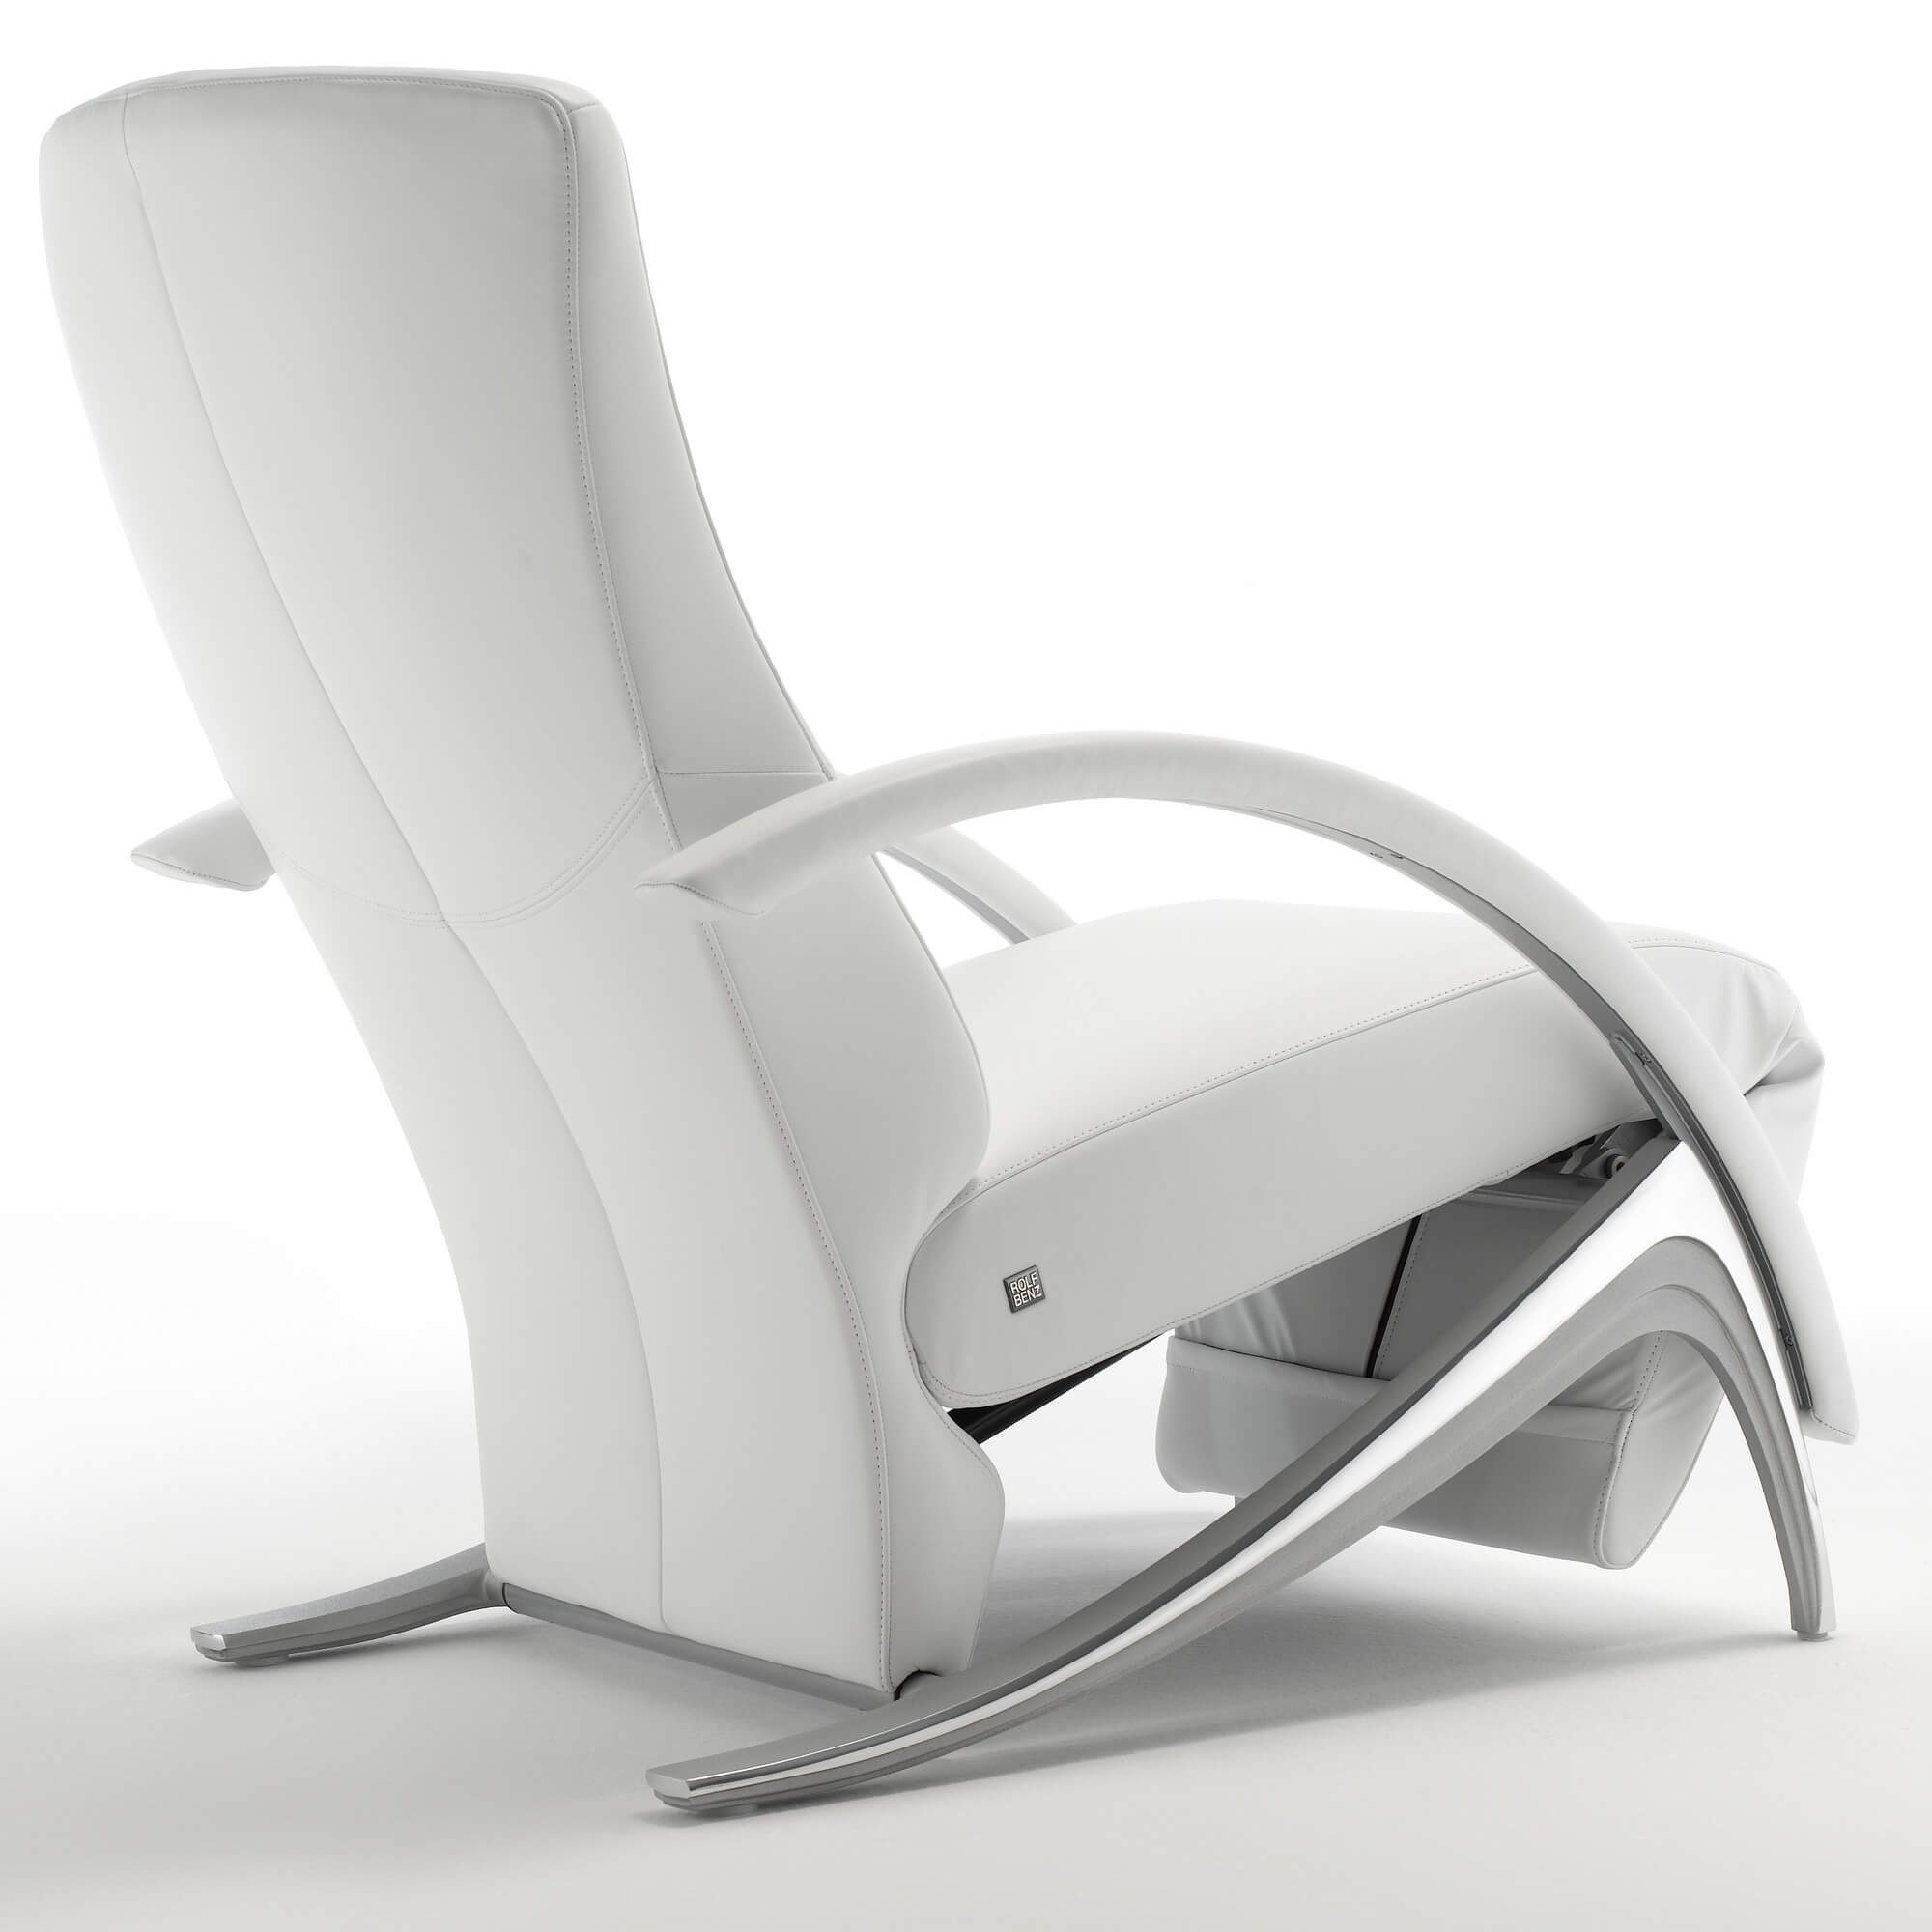 Дизайнерское кресло Rolf Benz 3100 из Германии